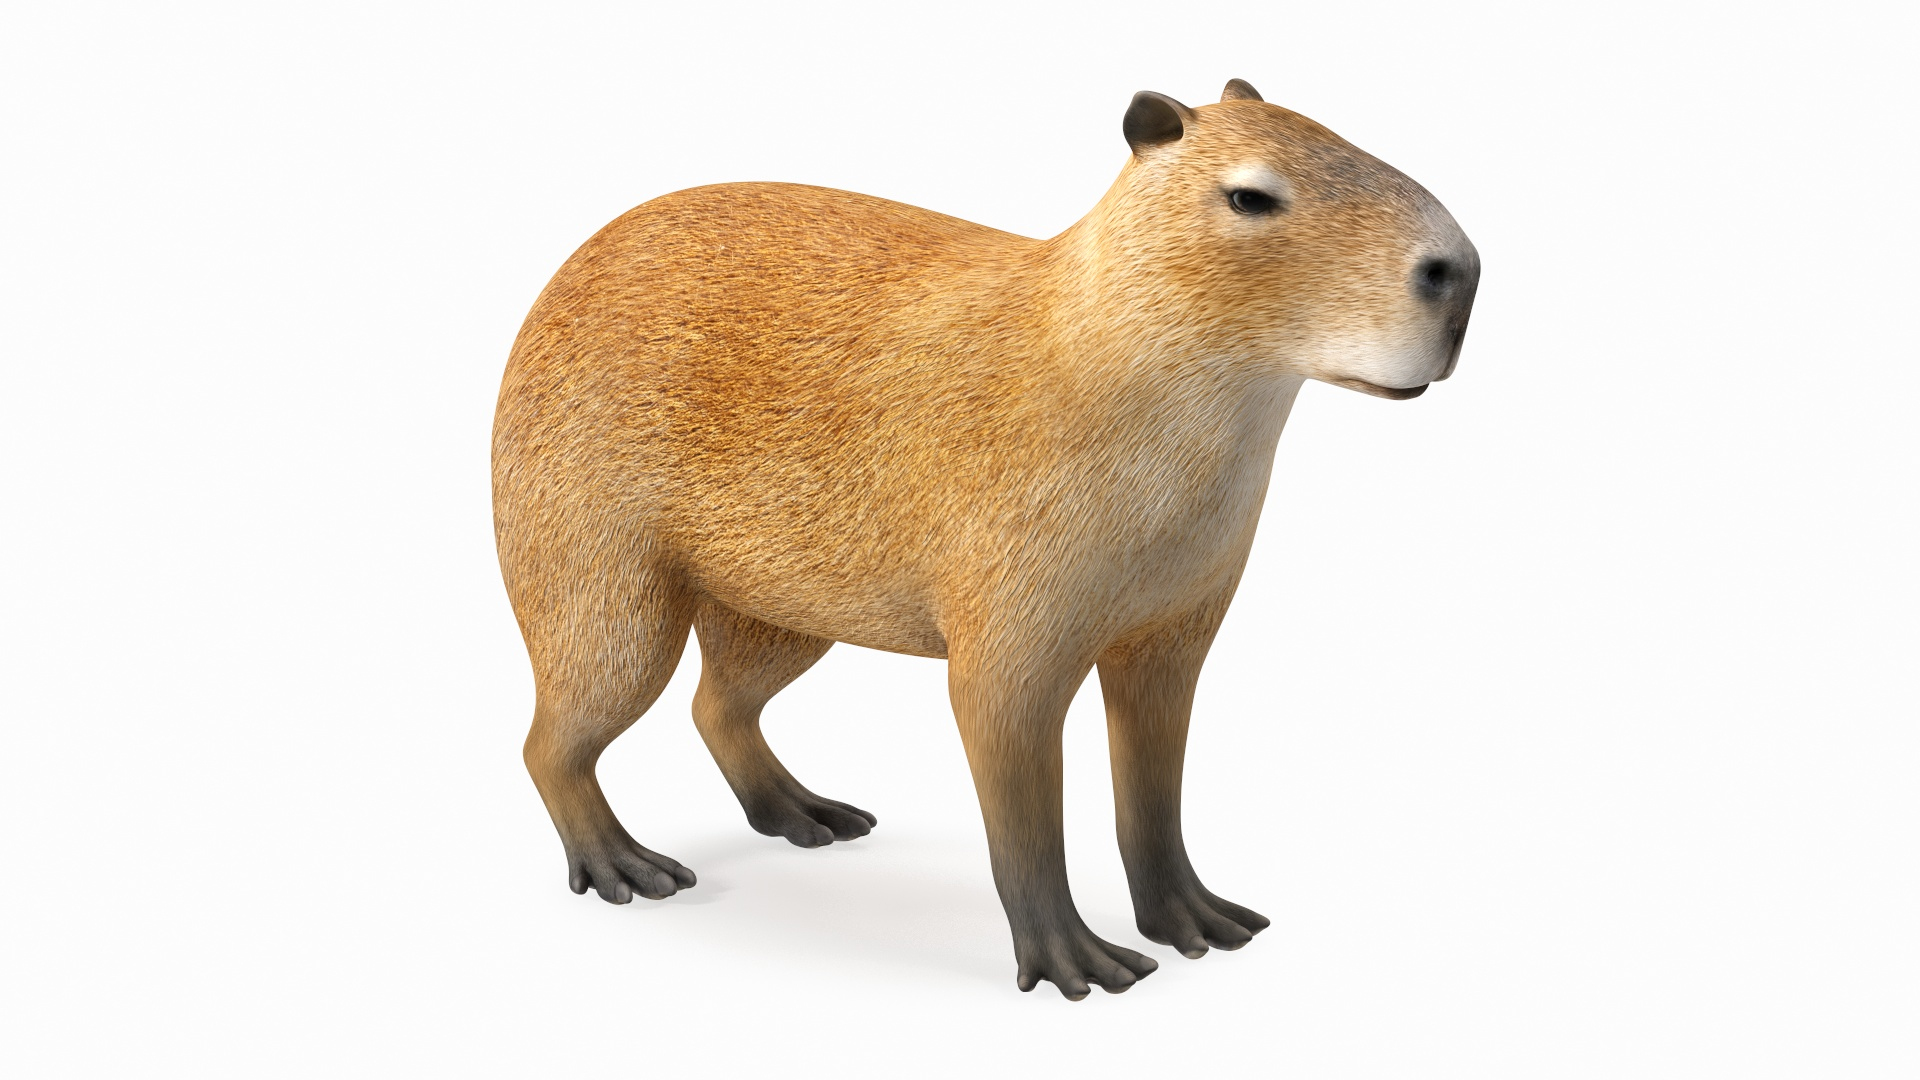 capybara Modelli 3D - Scaricato 3D capybara Available formats: c4d